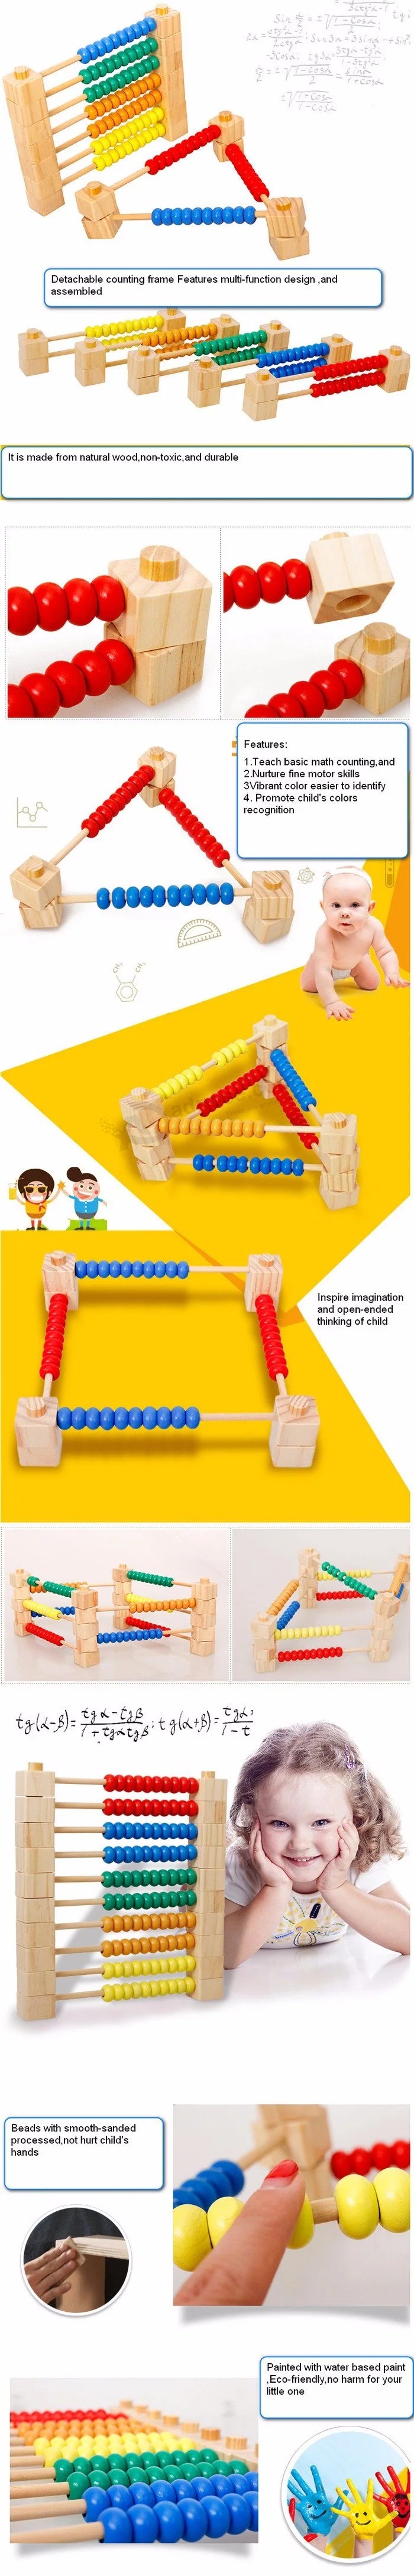 지능형 개발 수학 DIY 나무 구슬 미로 유치원 교육 장난감 (GY-0004)